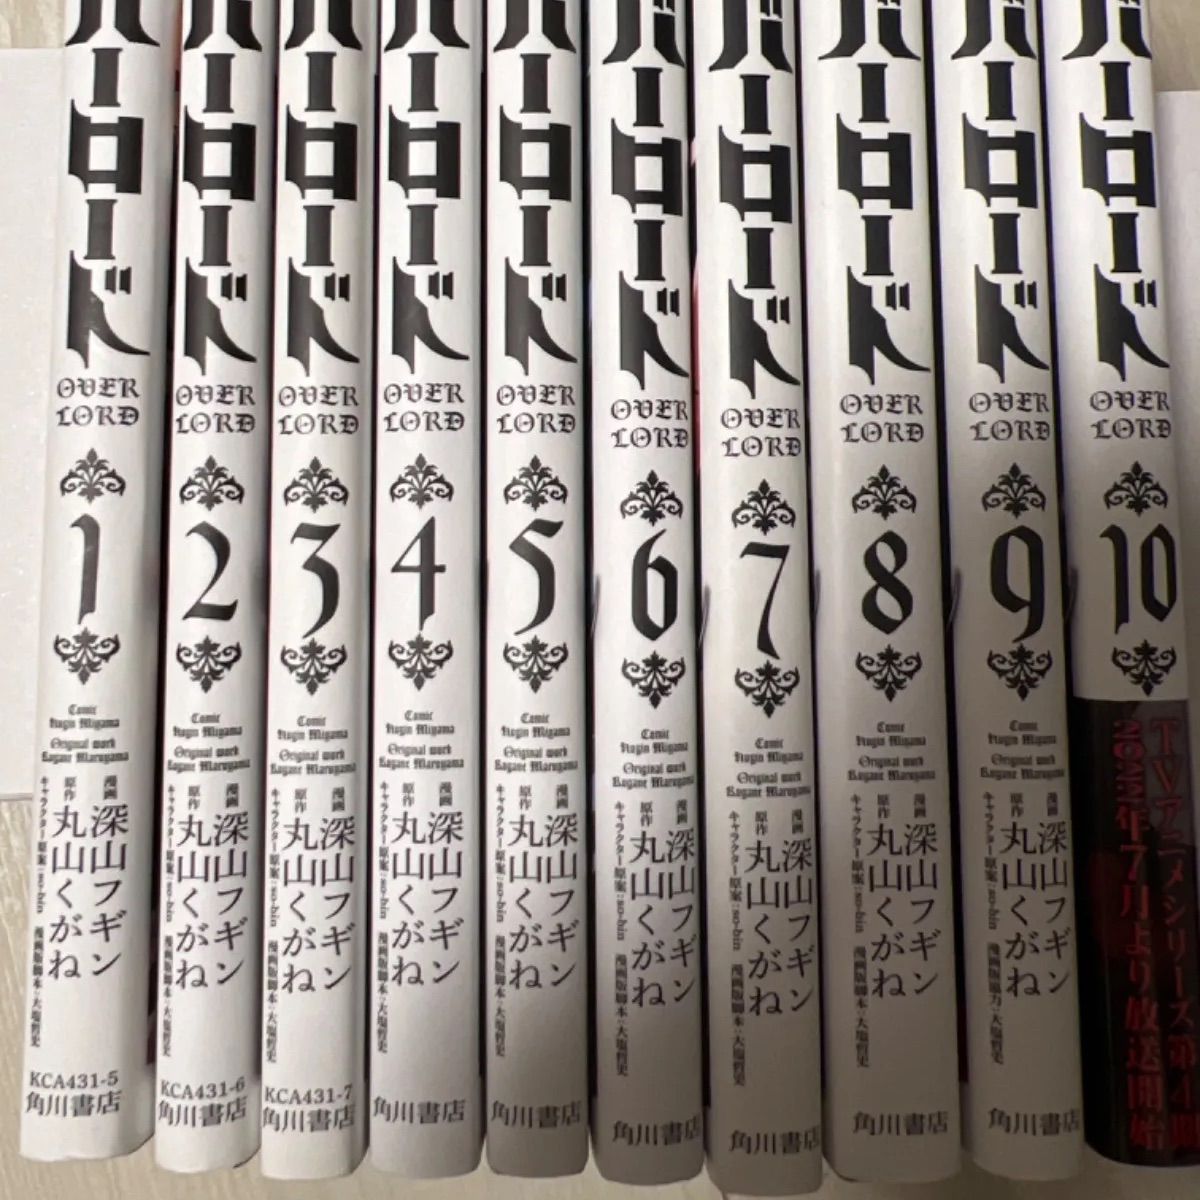 中古 オーバーロード 1 〜 10 巻セット - プライズ品 - メルカリ